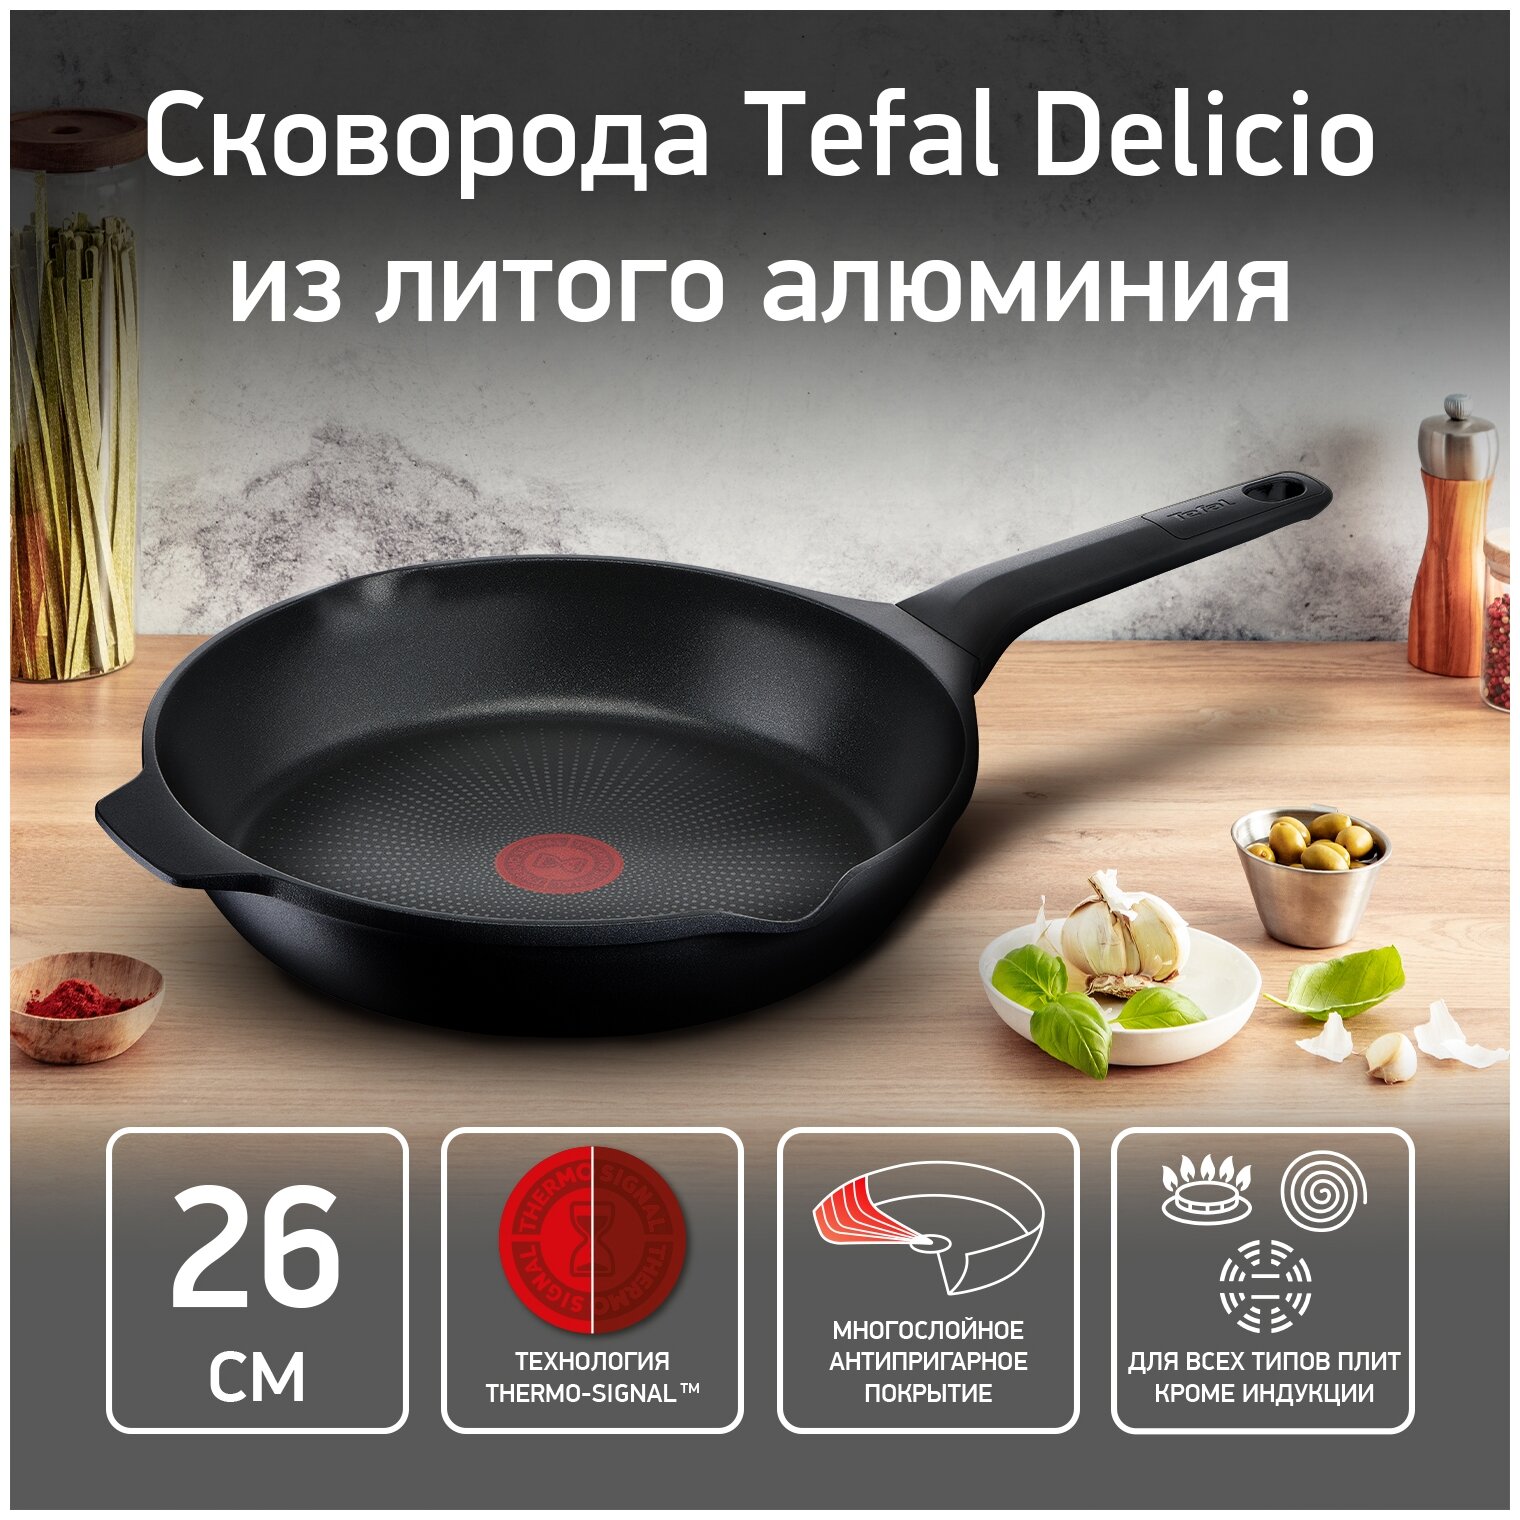 Сковорода Tefal Delicio, диаметр 26 см